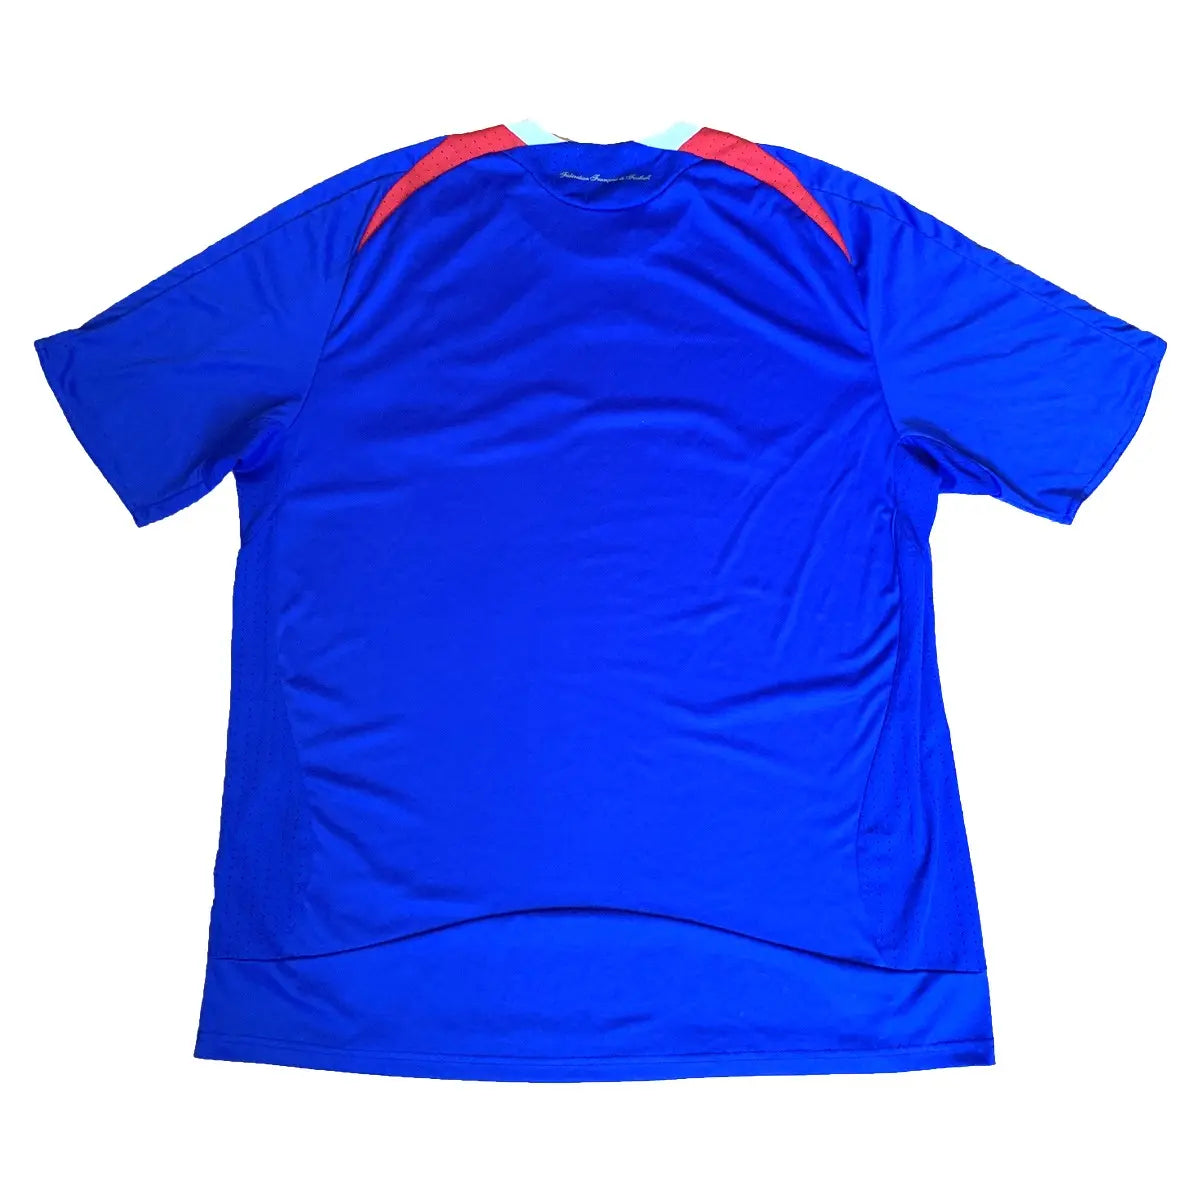 Maillot retro/vintage authentique domicile equipe de france, bleu, blanc et rouge, de dos, porté lors de l'euro 2008. On y retrouve l'équipementier adidas